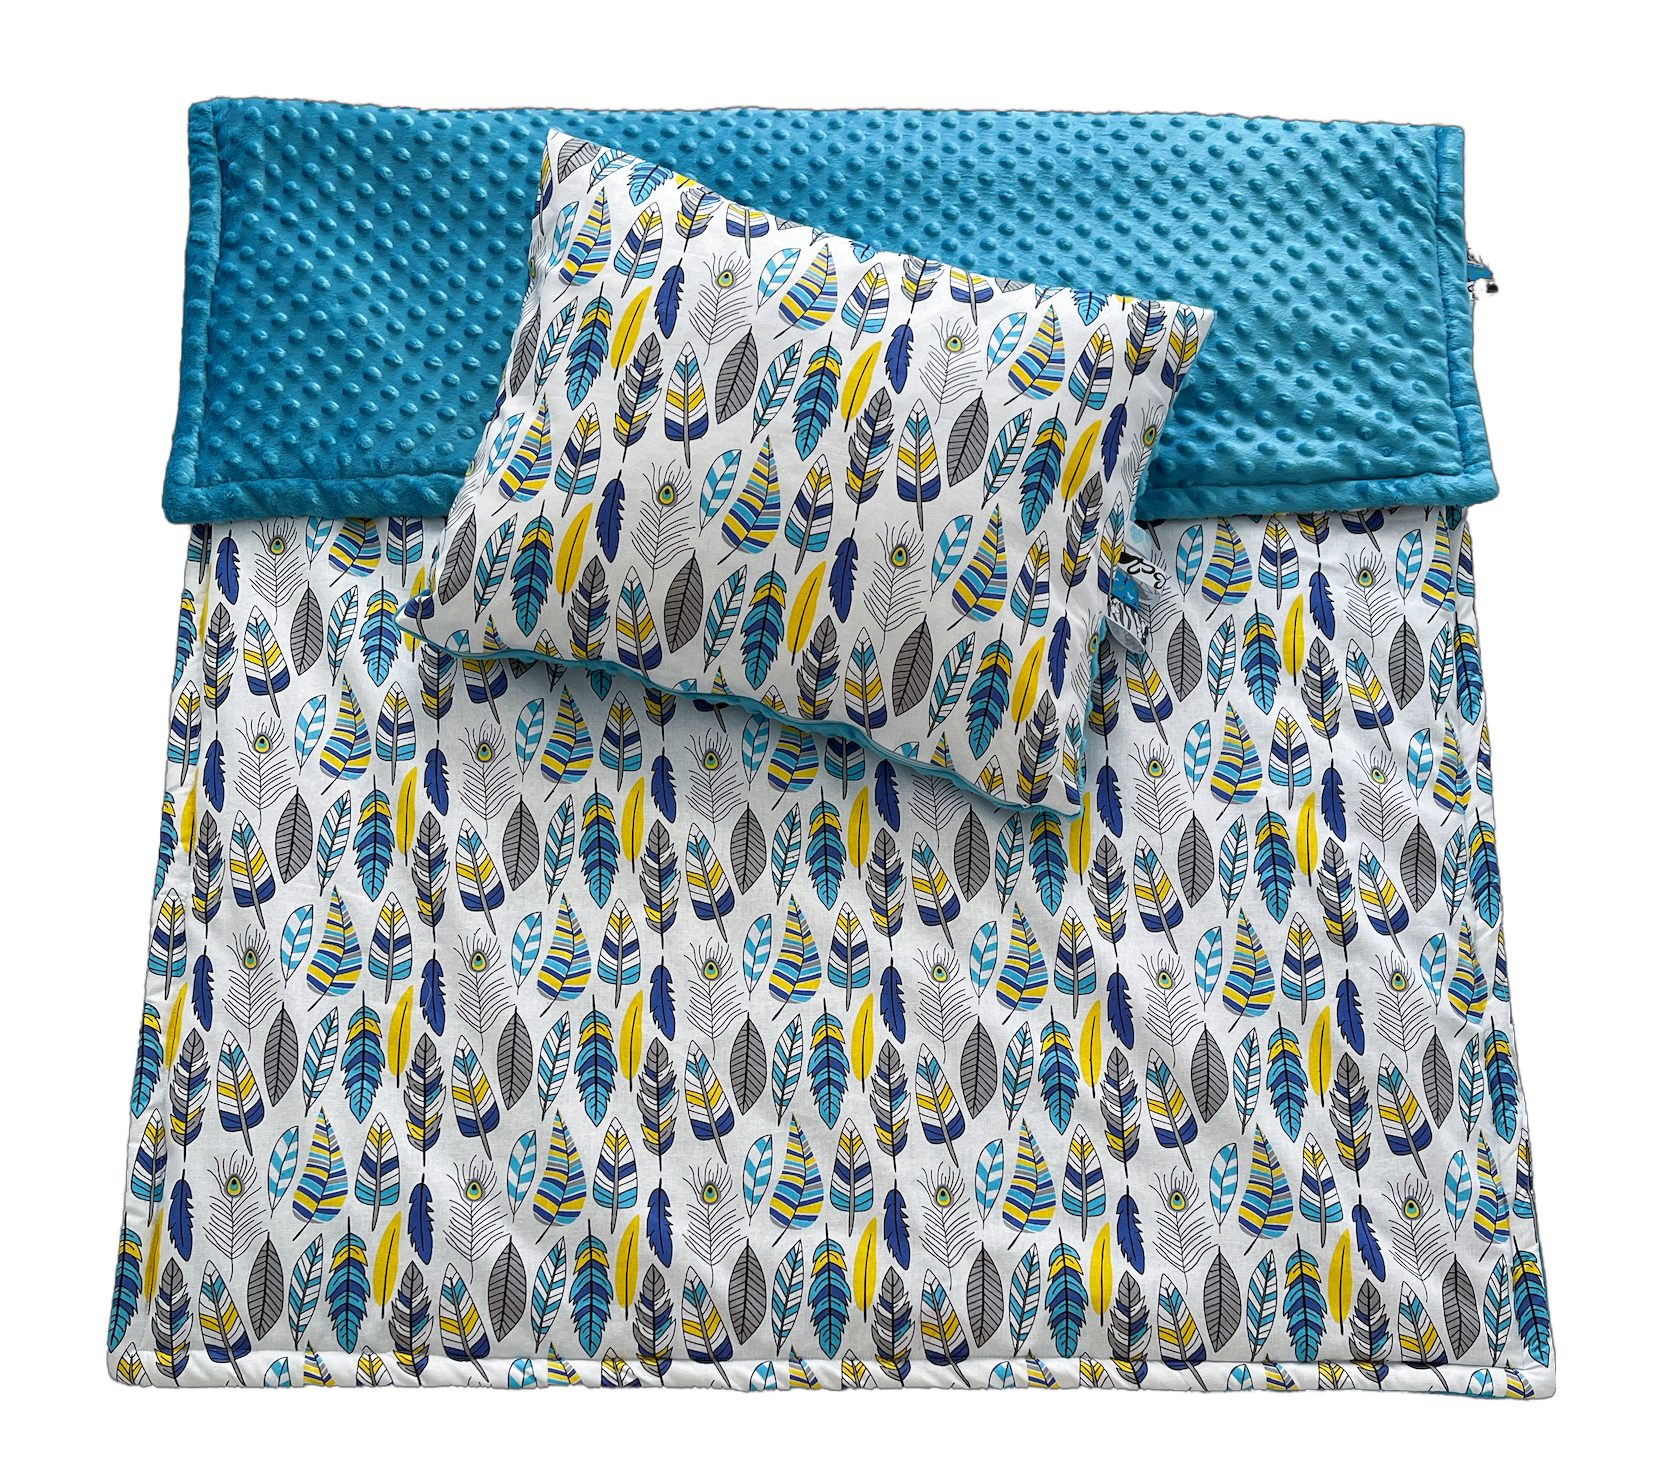 Kinderdecke Kinderdecke Krabbeldecke Kinderbettdecke mit Kopfkissen mit Bänder 100x135cm RoKo-Textilien, 40x50cm